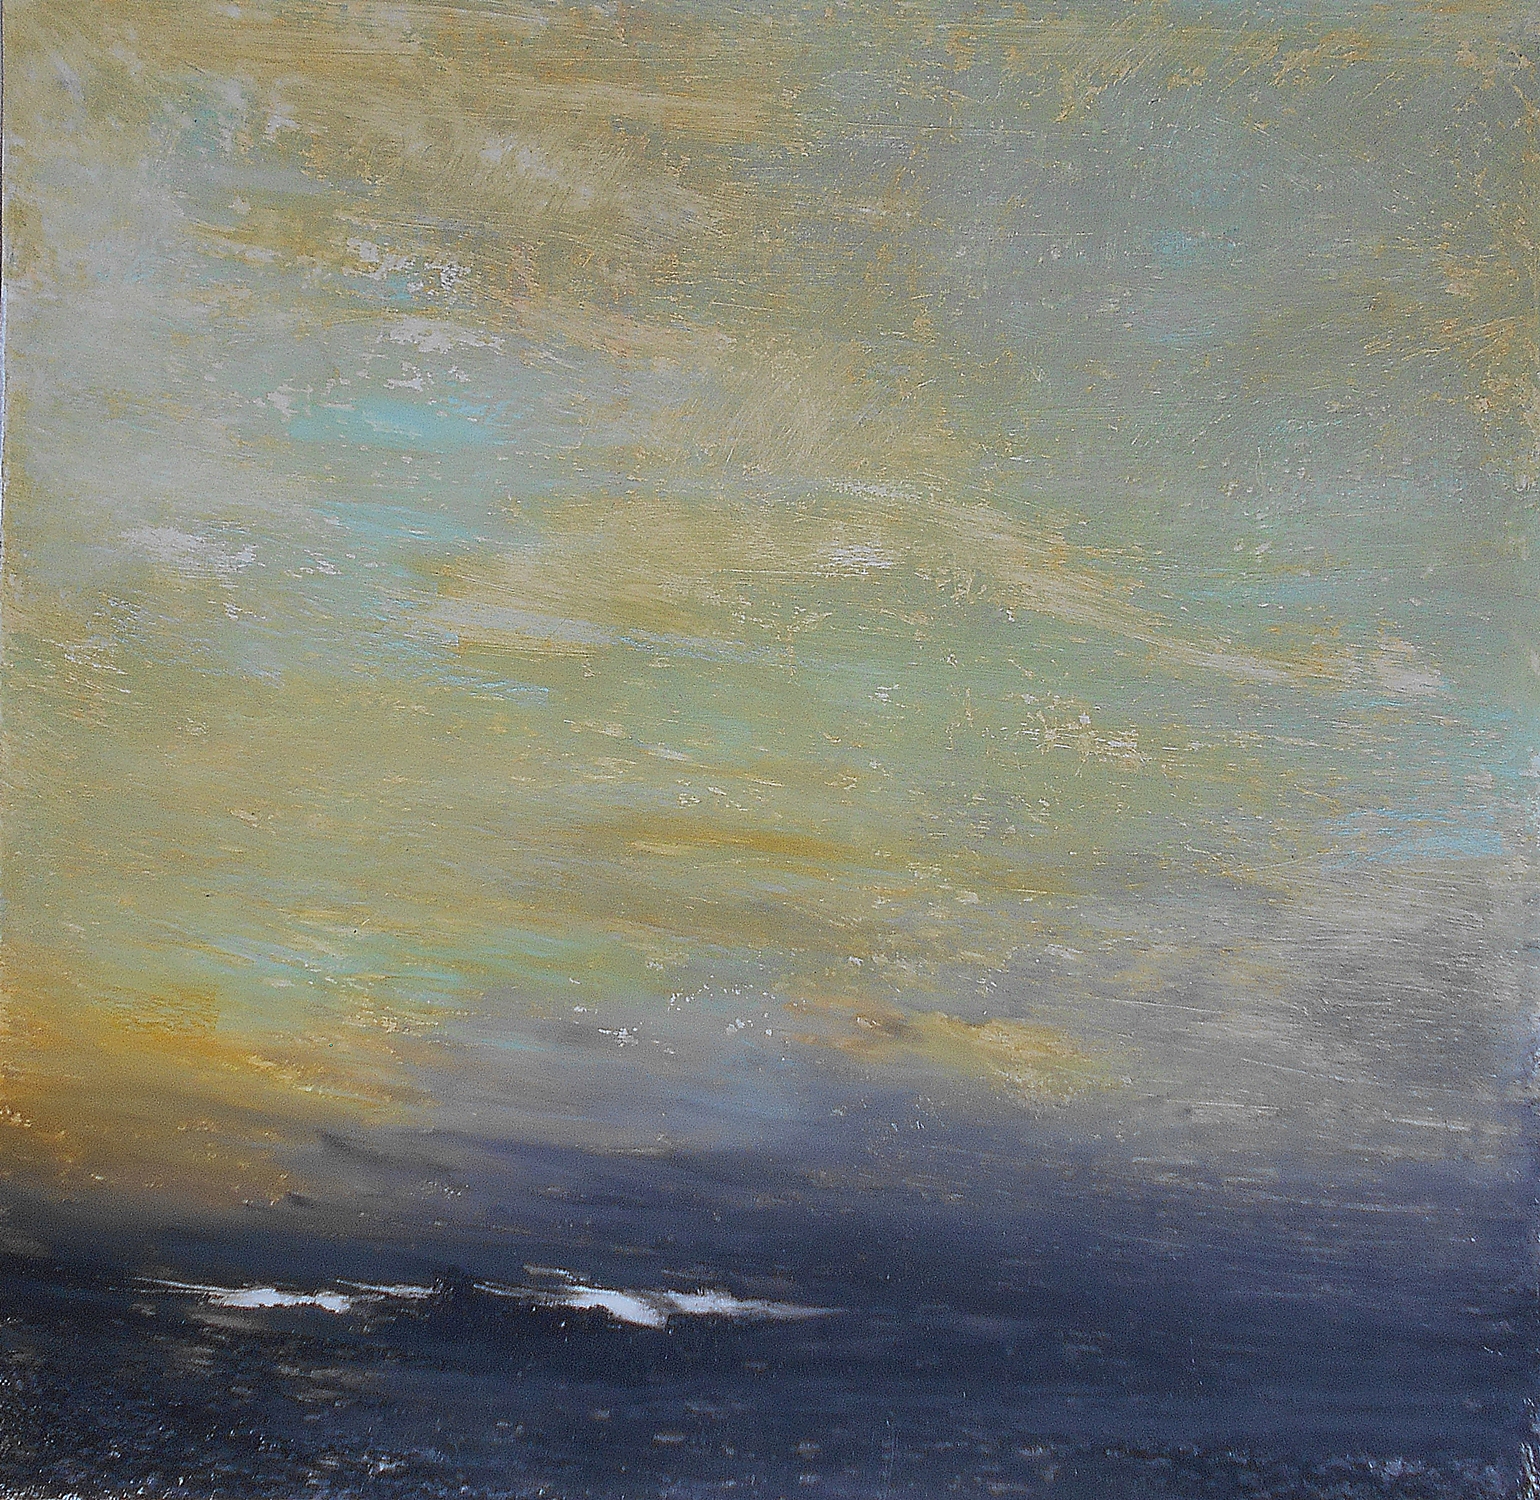 64.Landscape, 70x70, oil pastel on paper, 2019